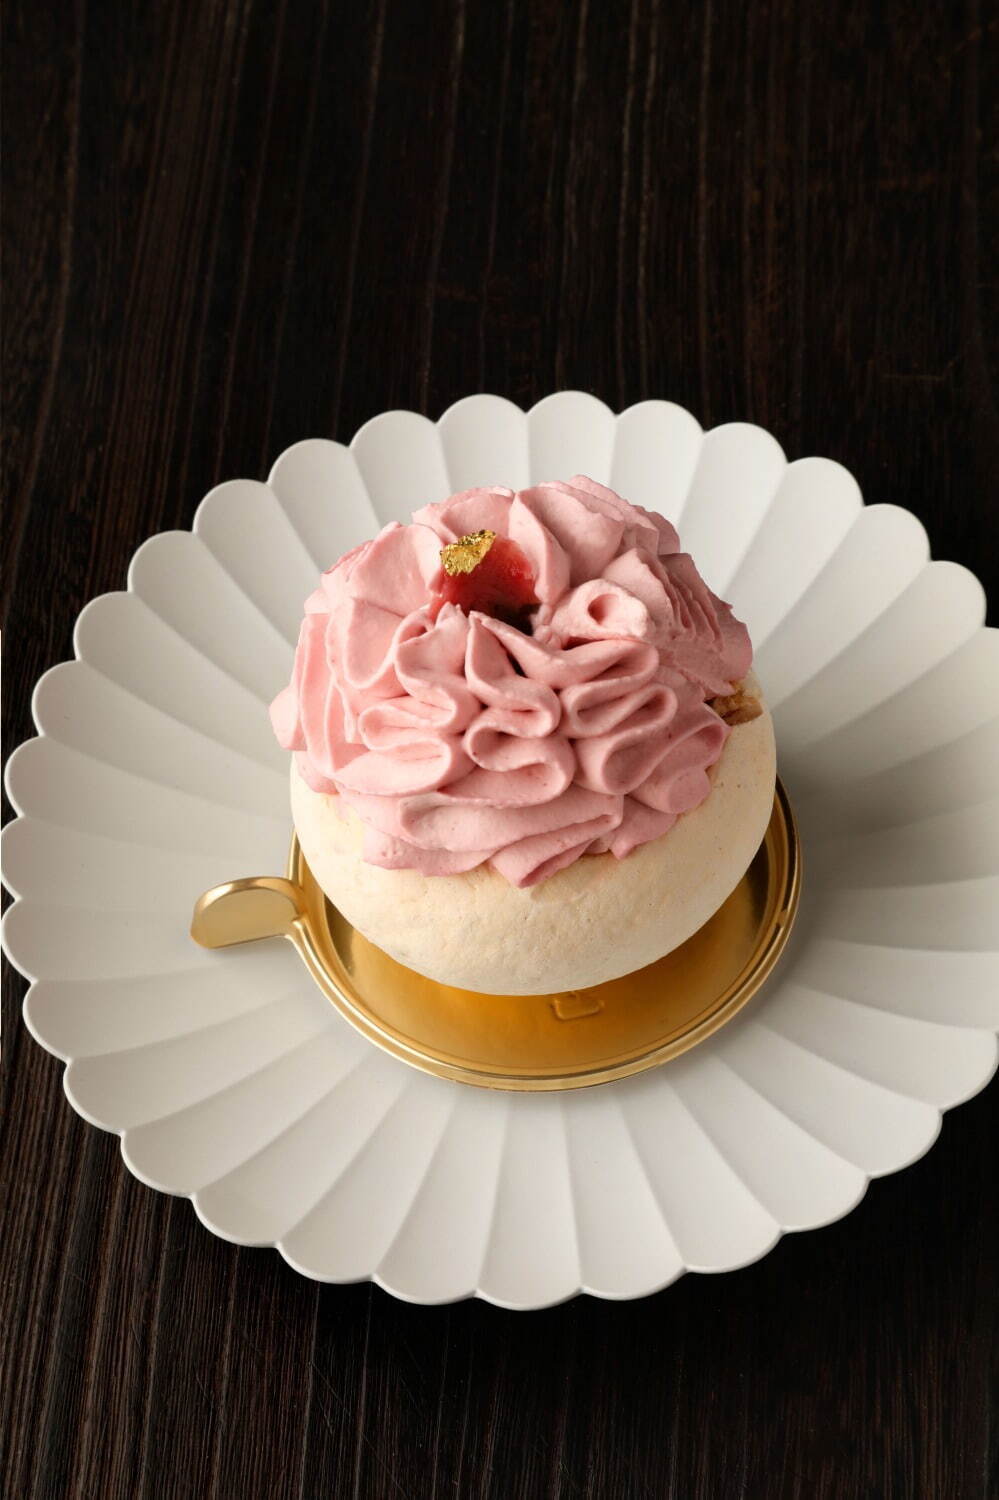 写真3 7 クリオロの桜スイーツ 花びら舞い落ちる さくら抹茶 さくら苺 ケーキ ファッションプレス